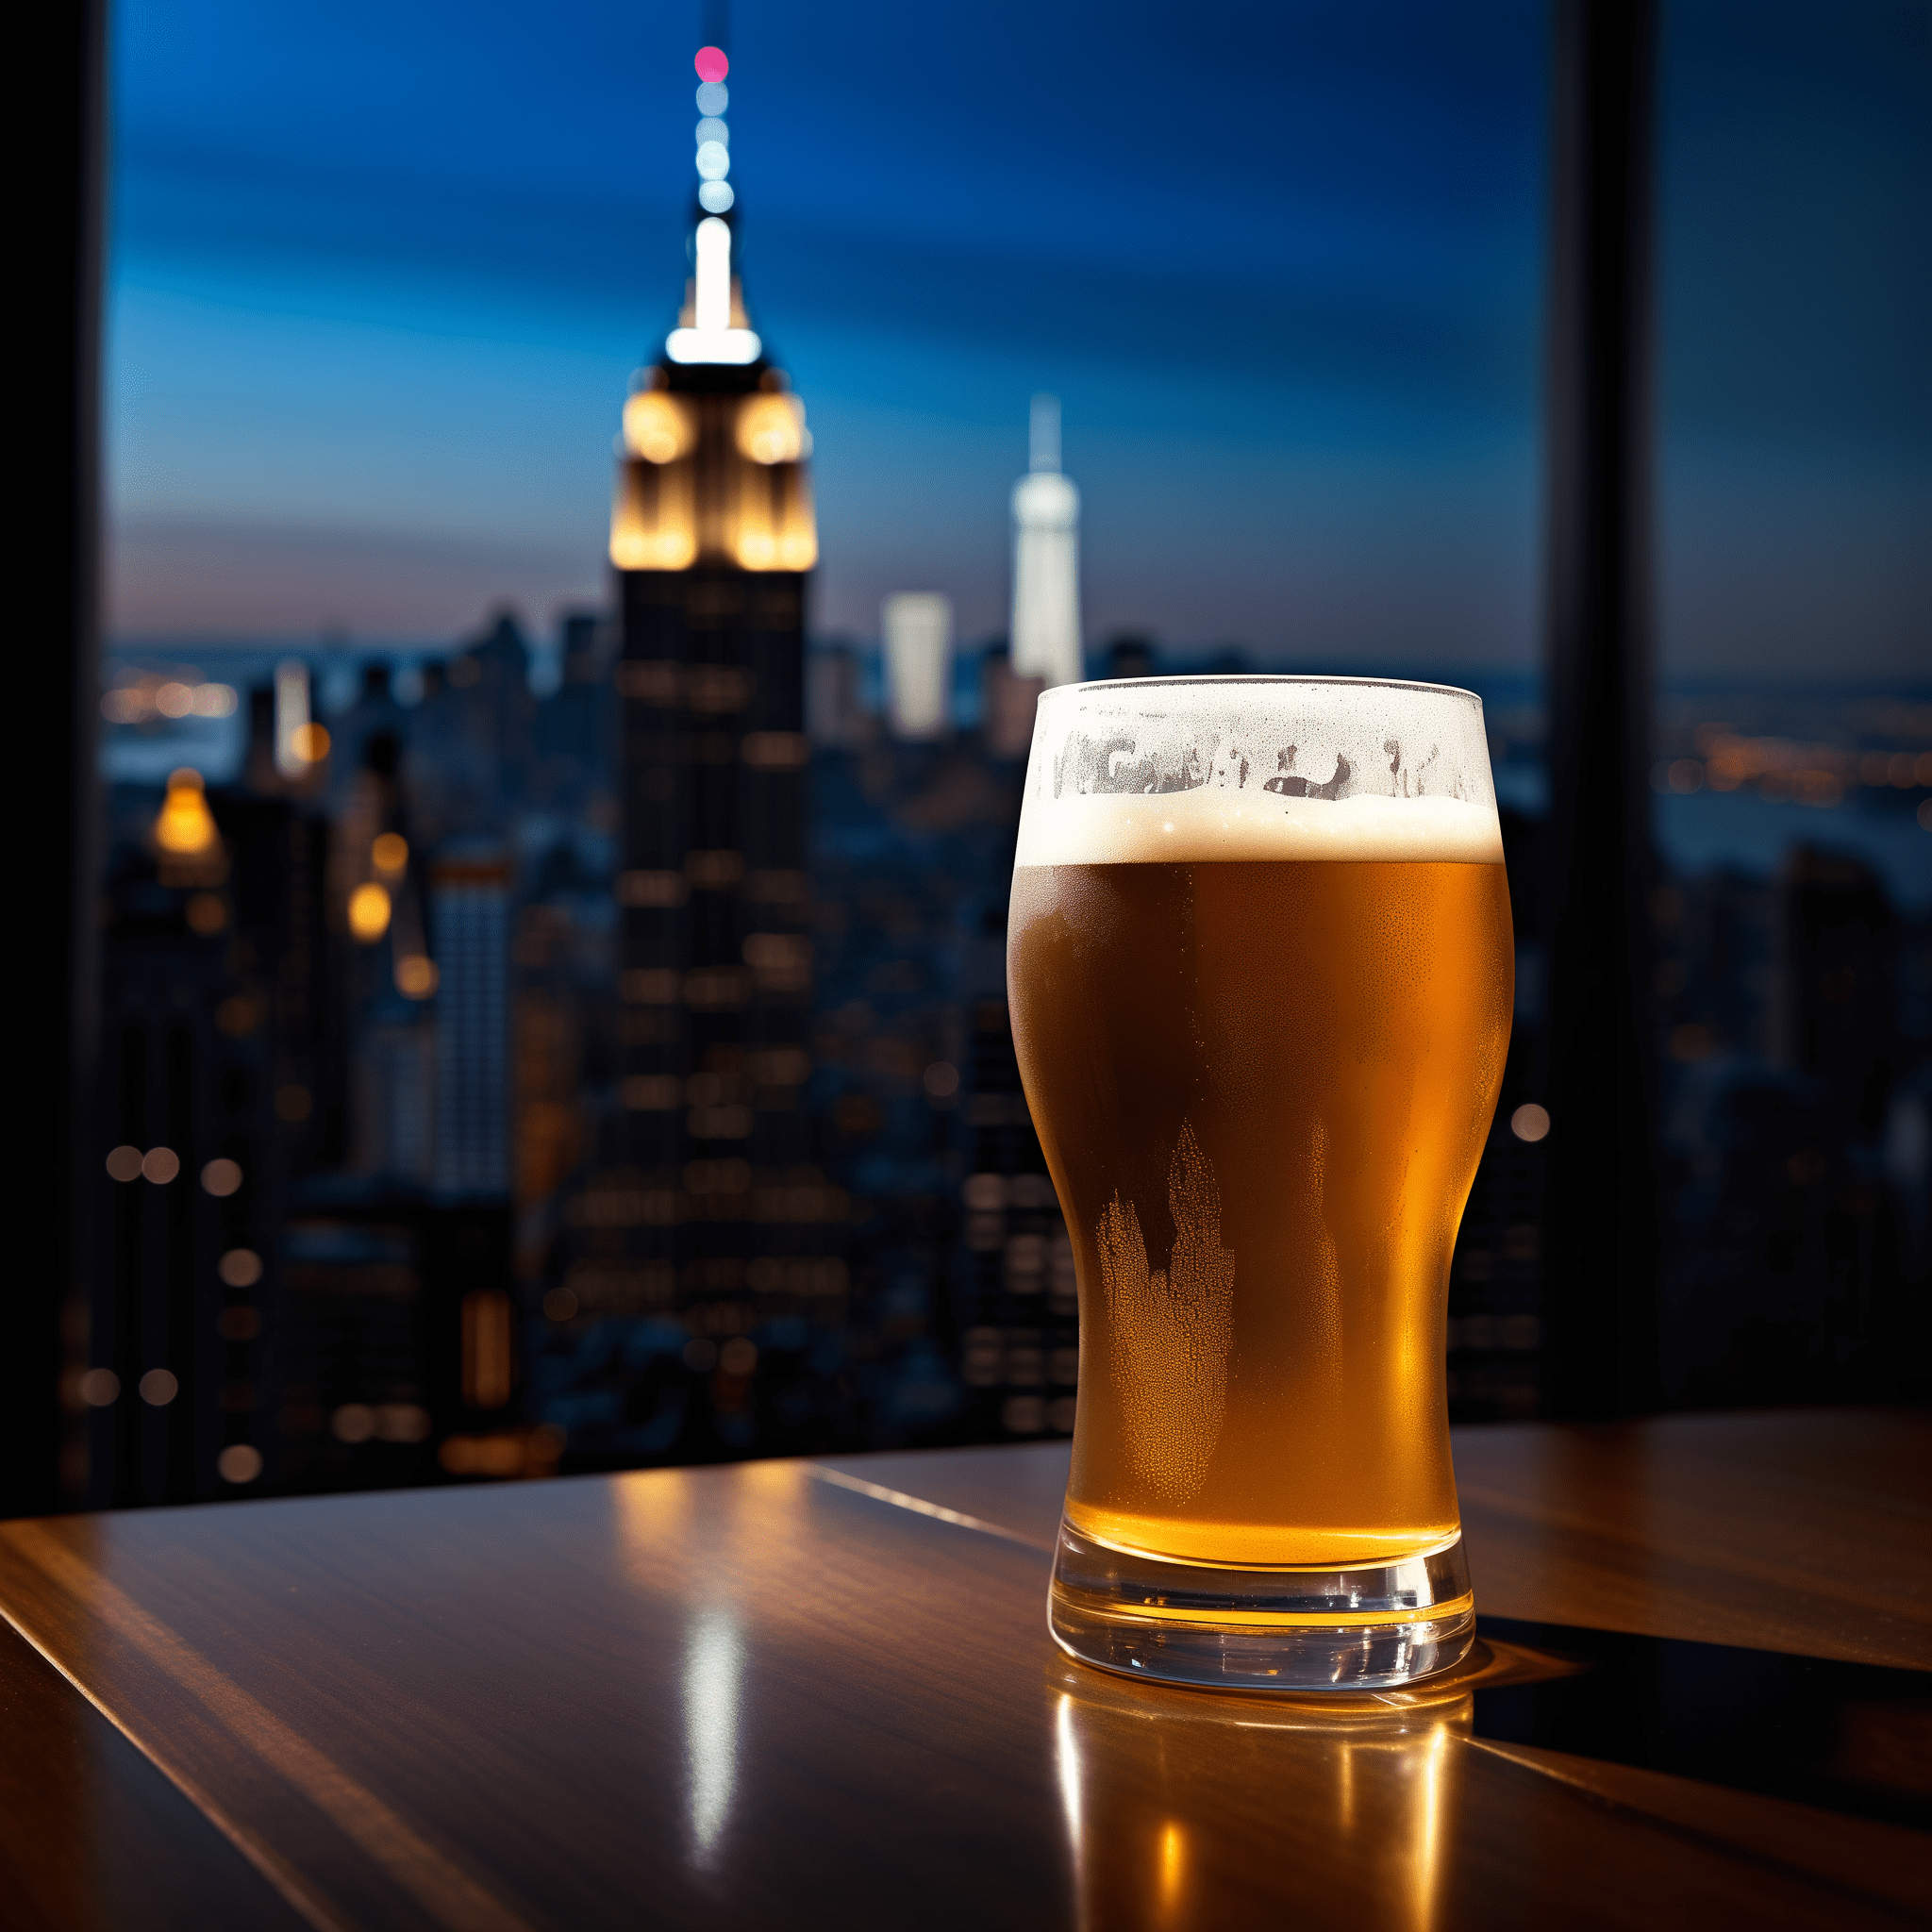 New York Bomb Receta - El New York Bomb ofrece un sabor robusto y cálido del coñac, combinado con el final fresco y refrescante de la cerveza lager. Es una yuxtaposición de fuerte y suave, con una rica complejidad.